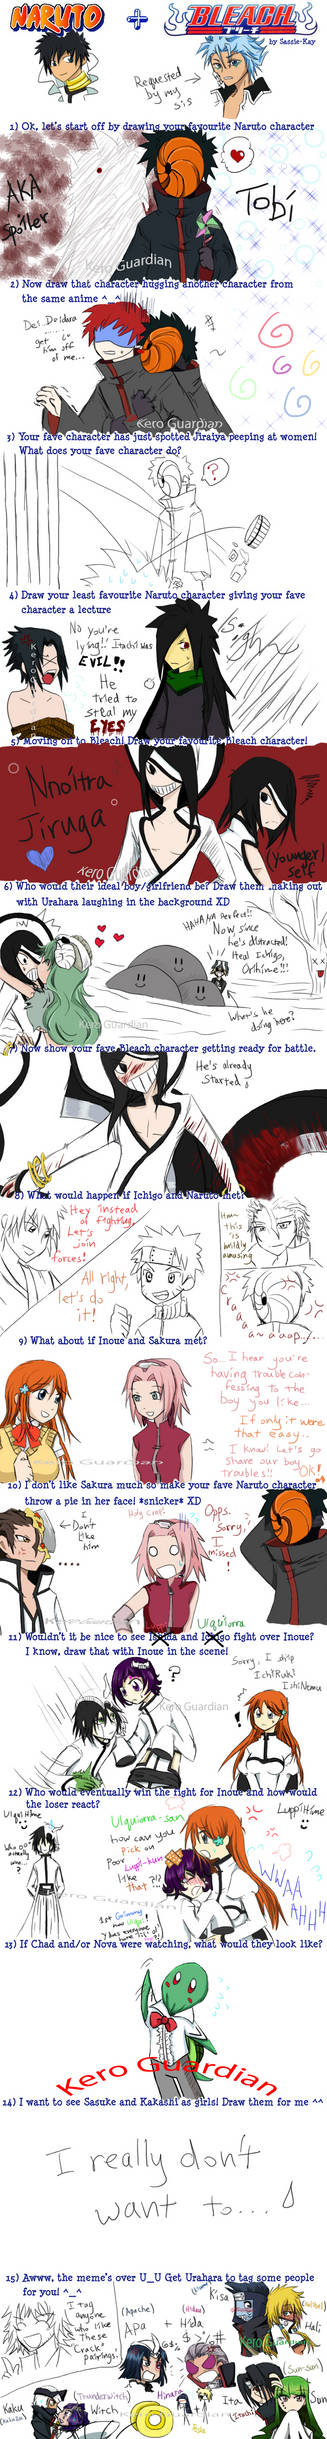 Bleach and Naruto Meme